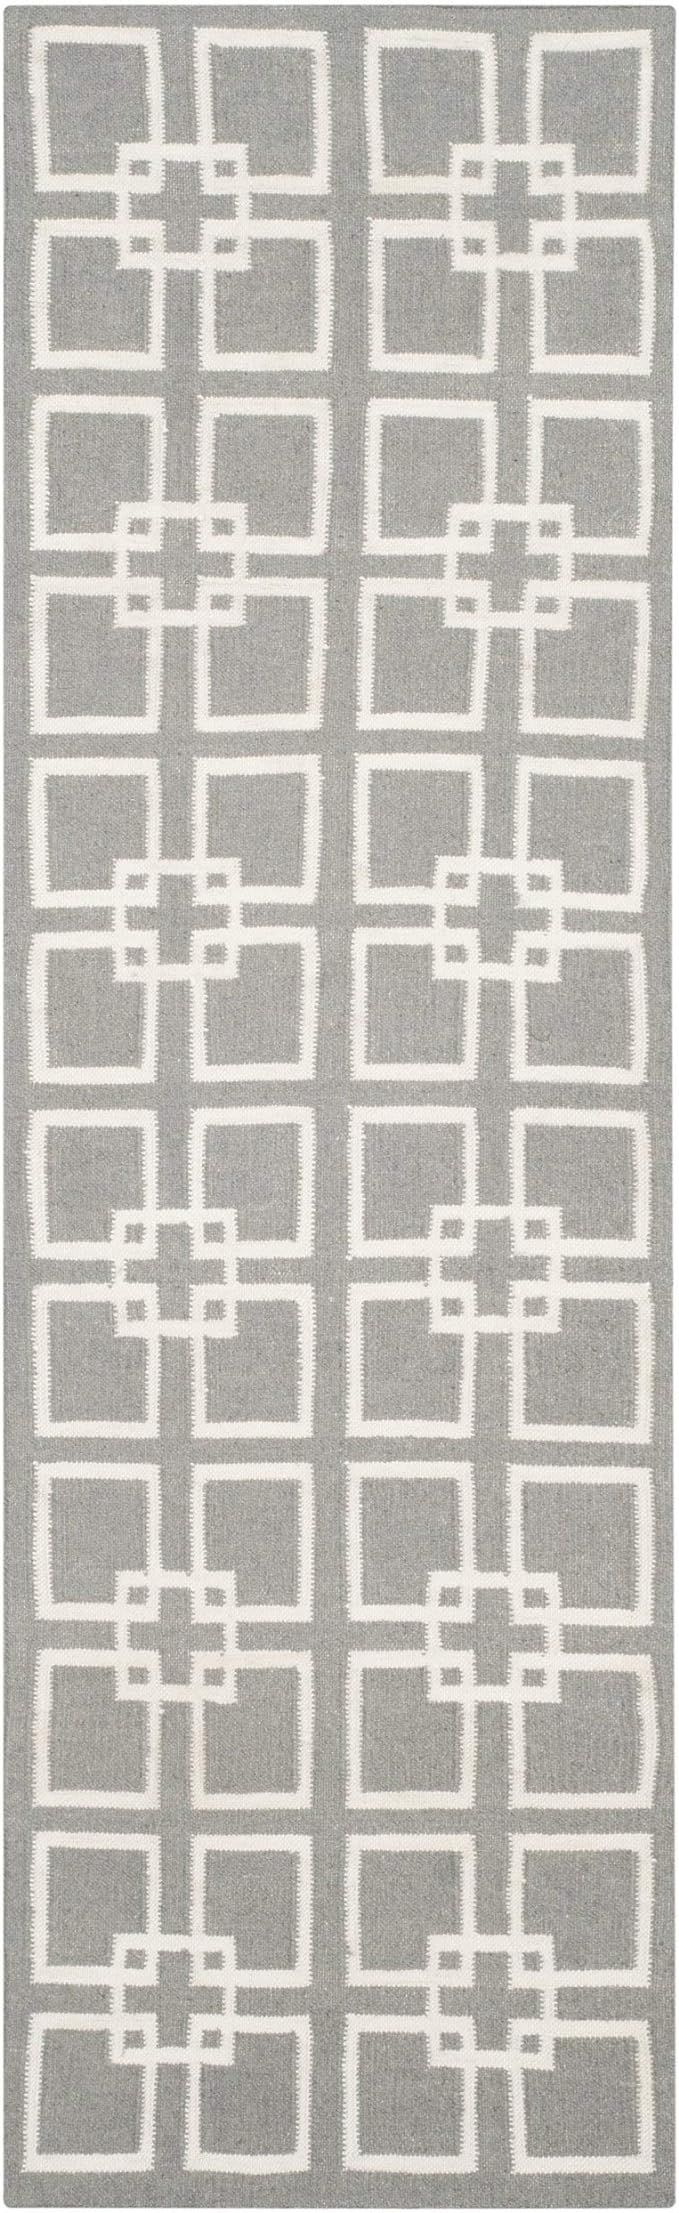 MARTHA STEWART x SAFAVIEH MSR1151C Square, Dance Wool & Silk Runner Rug, 2'3" x 7', Cement Gray | Amazon (US)